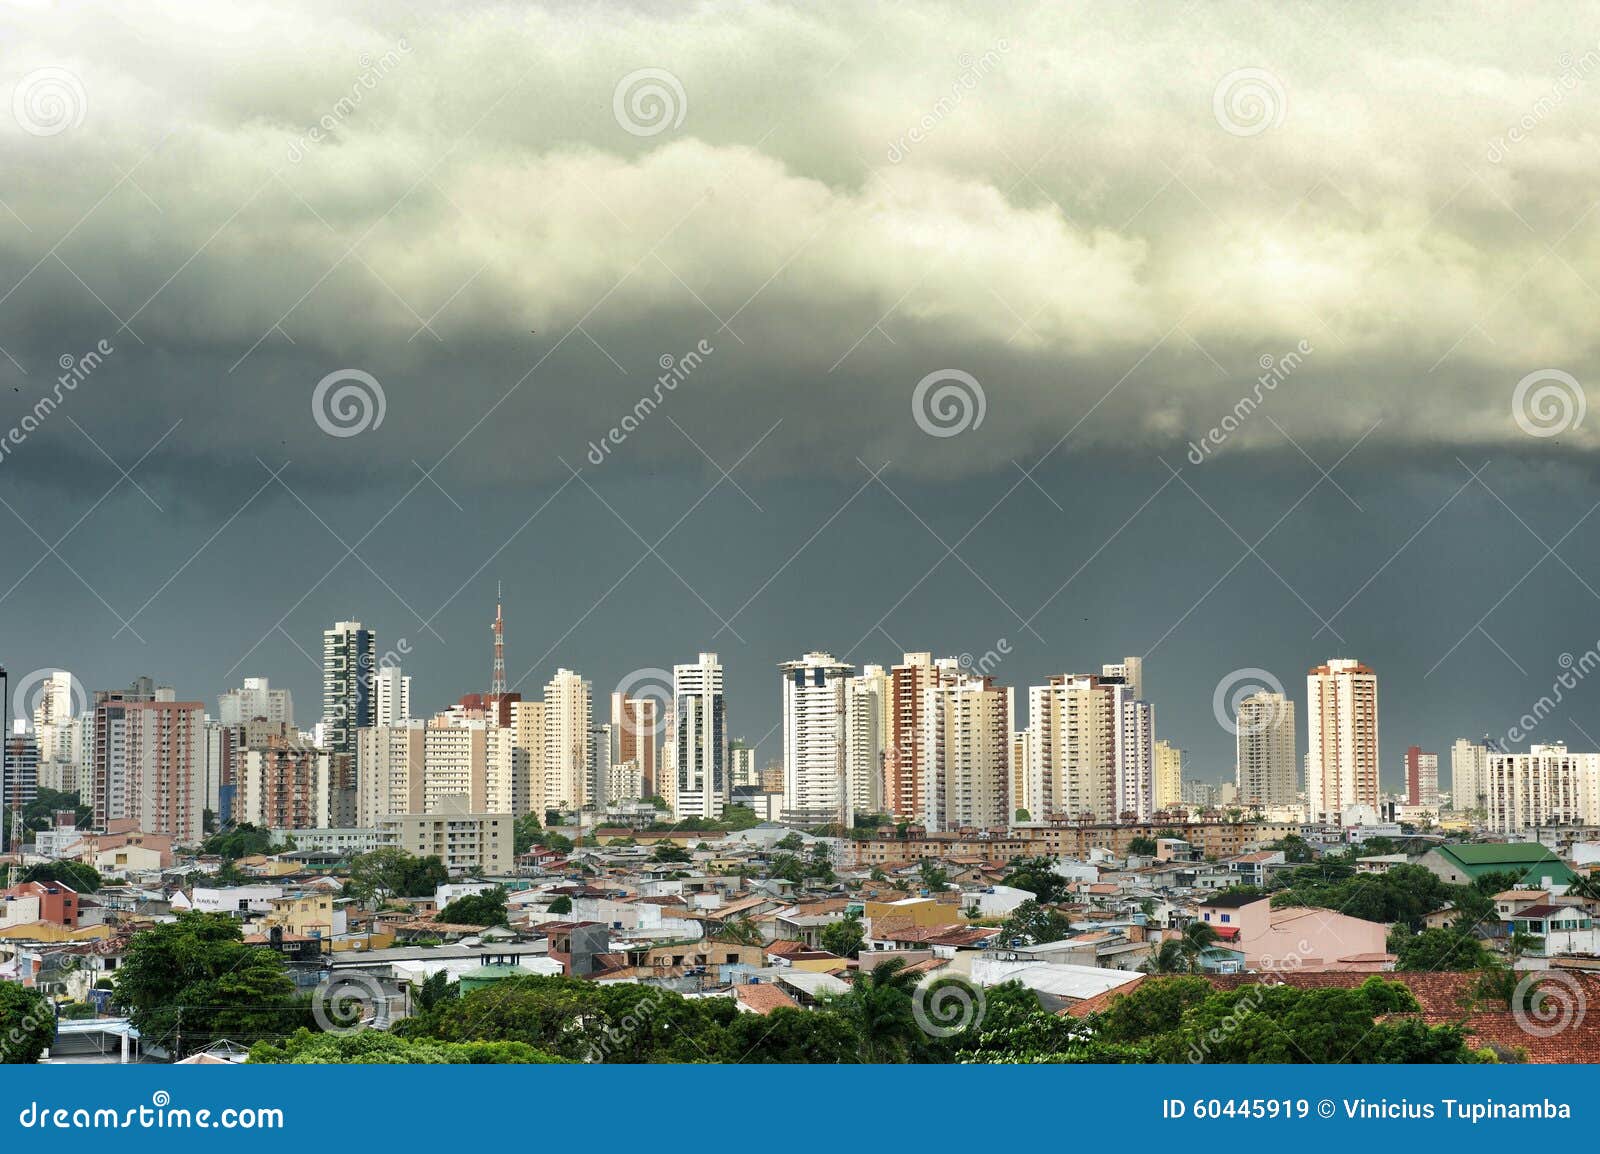 city of belem do para